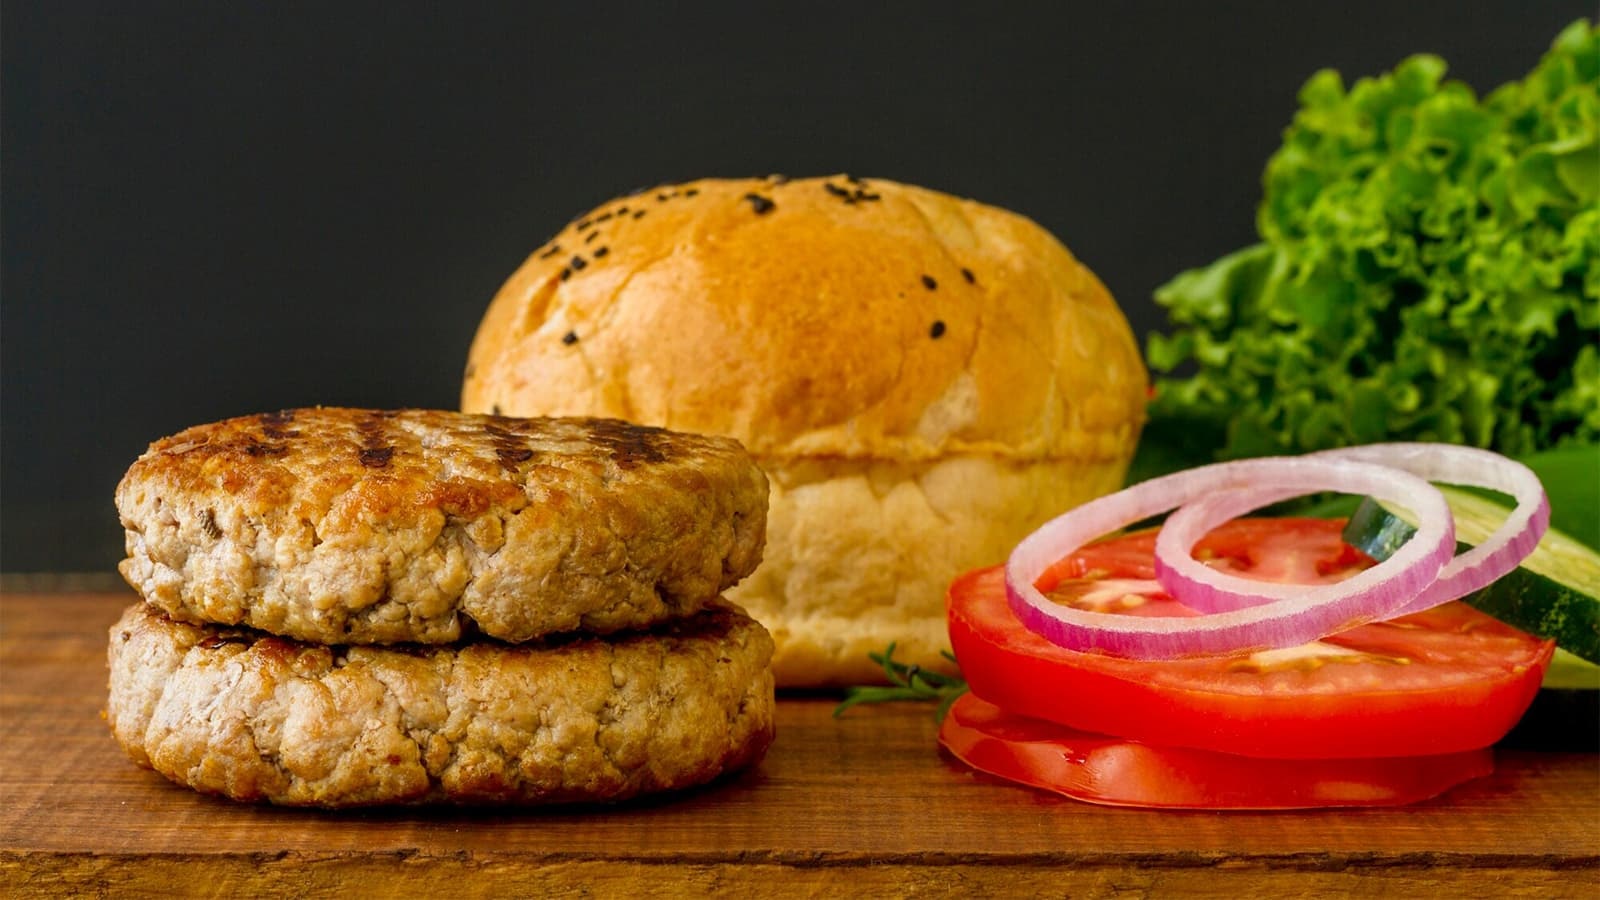 Wie viele Kalorien hat ein Burger? Bild von einem Burger, der in seine Bestandteile zerlegt wurde.